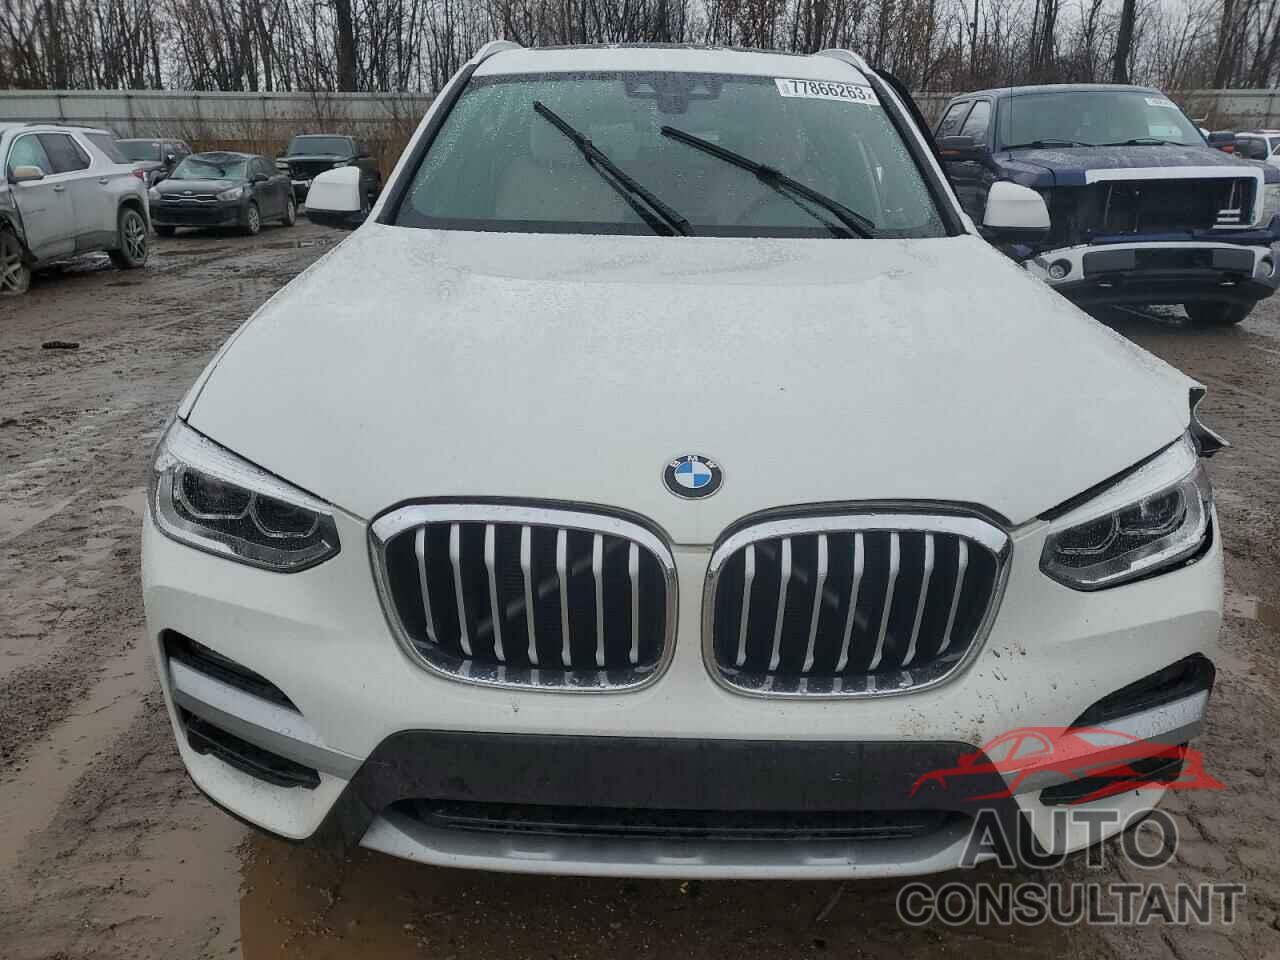 BMW X3 2021 - 5UXTY5C03M9G22576